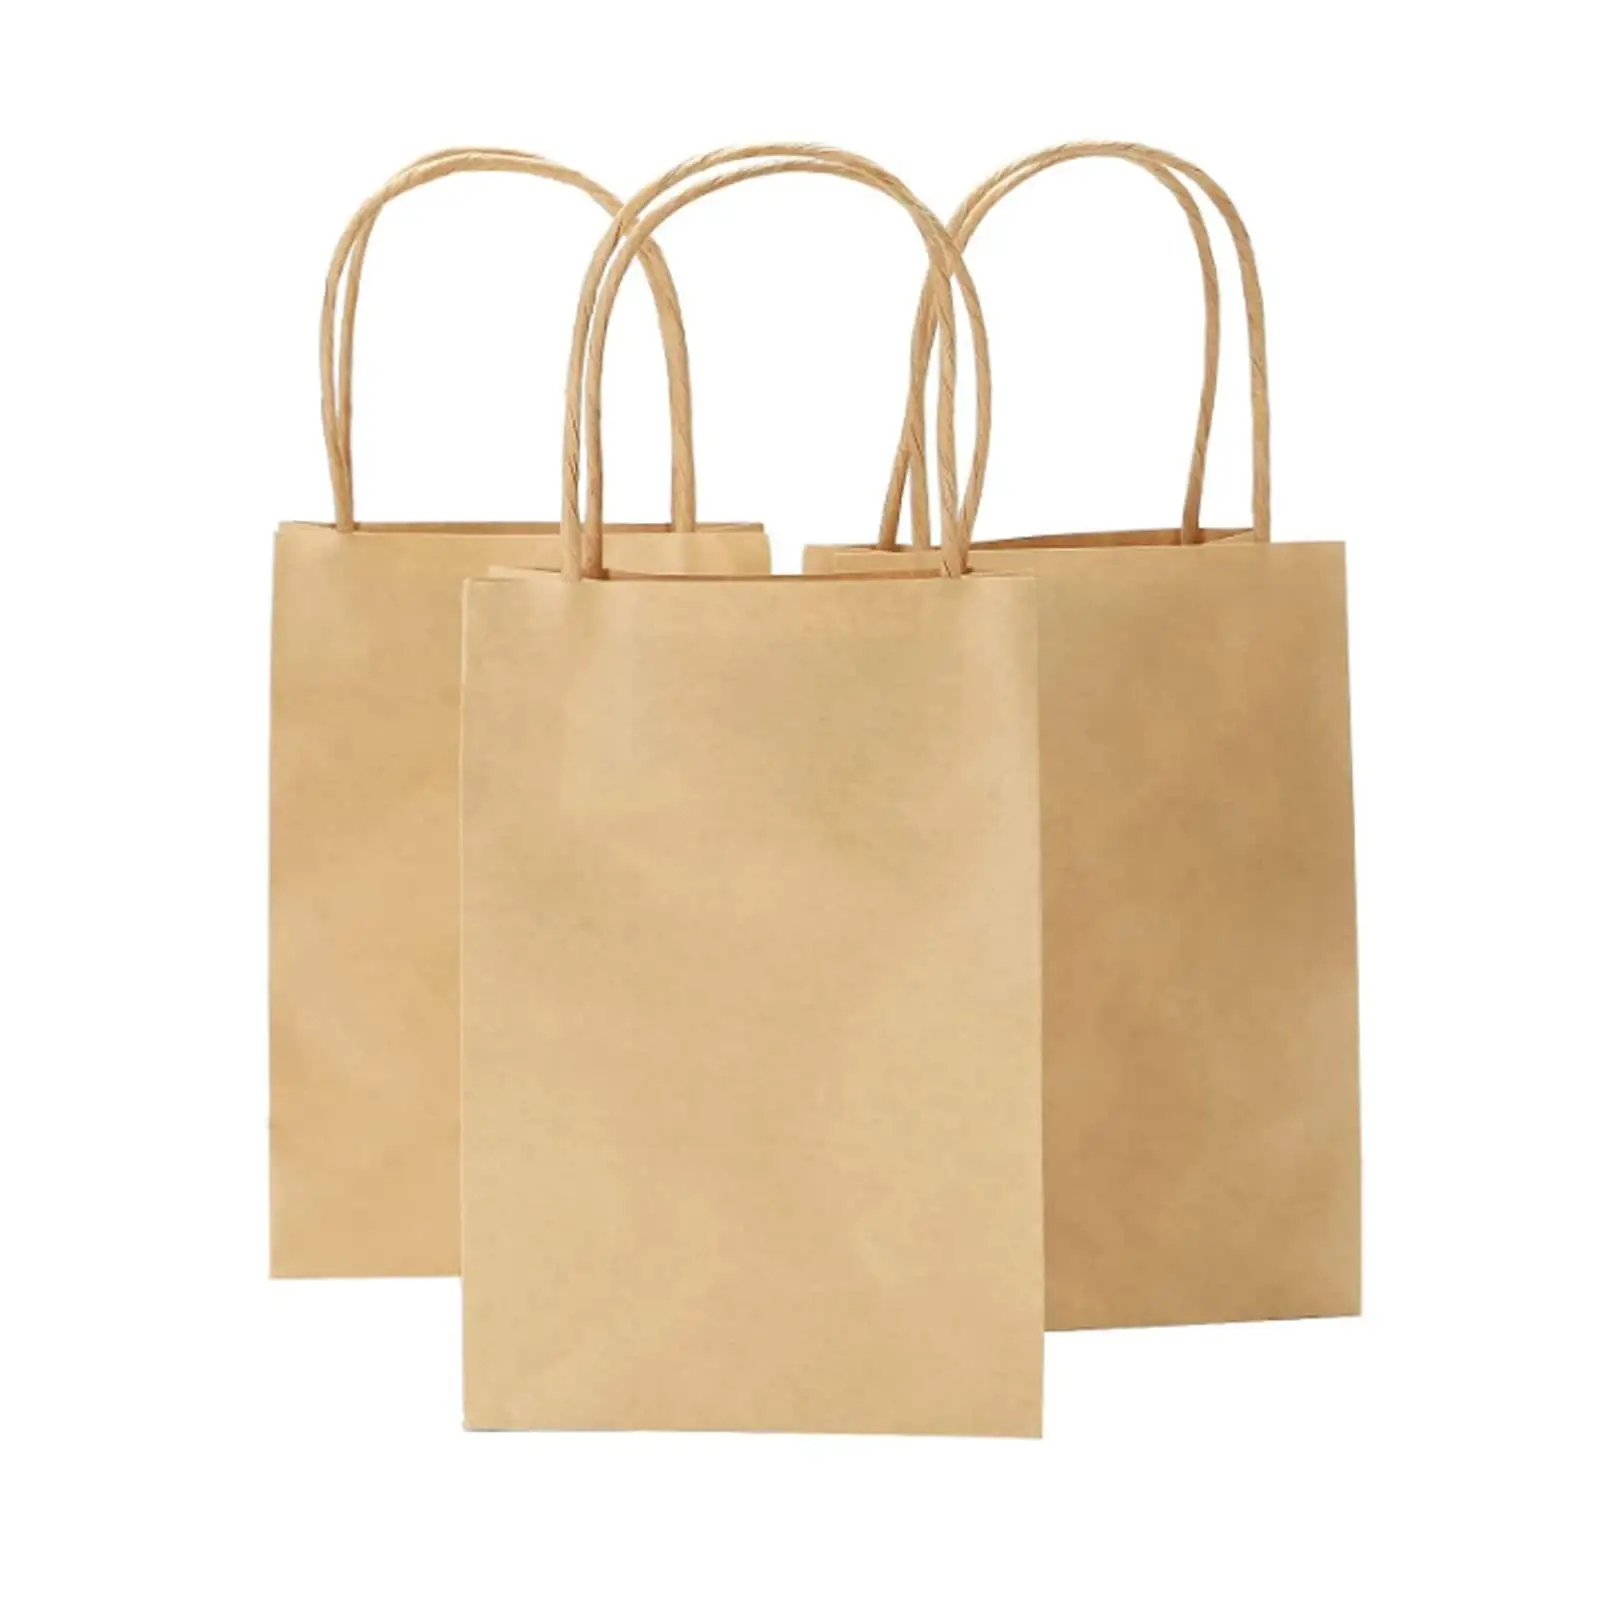 Productos populares, bolsa de transporte para tazas, contenedores de bagazo compostables, bolsa de compras de papel reciclado con logotipo